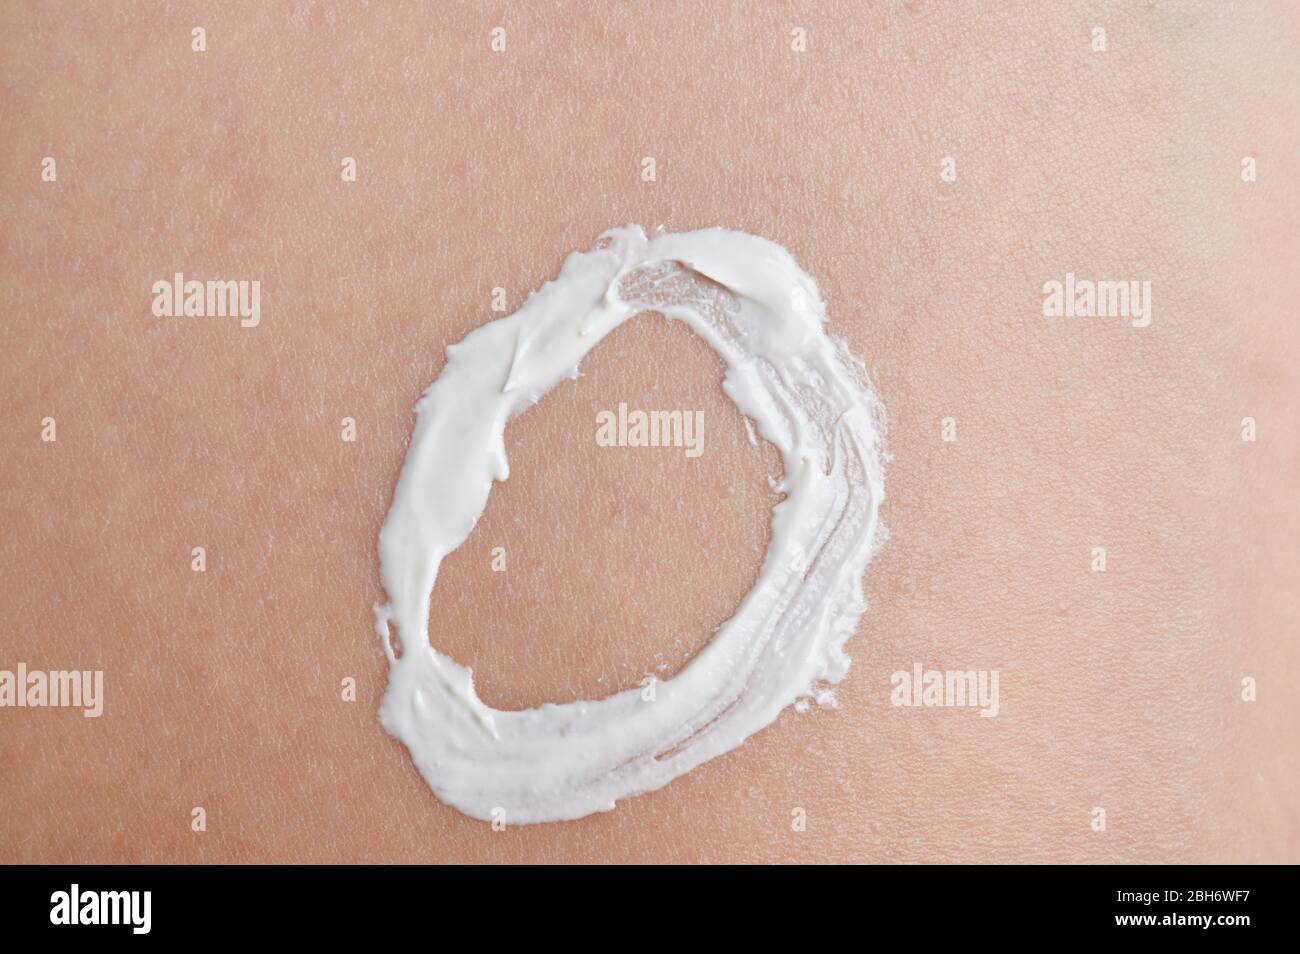 Tema de protección de la piel del bebé. Forma circular de crema blanca para la piel Foto de stock